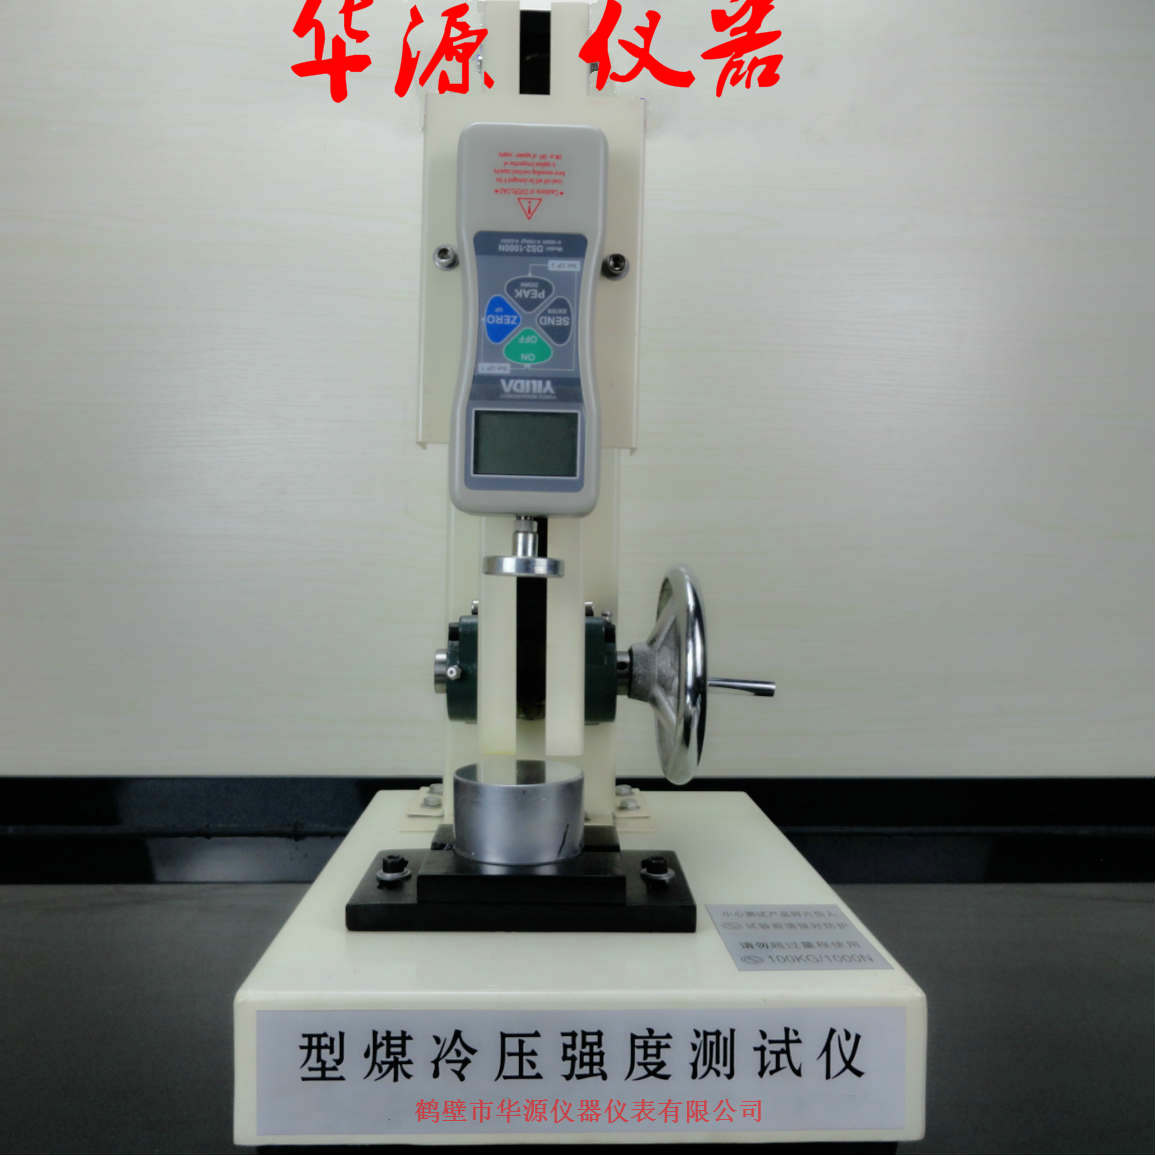 產品名稱：型煤冷壓強度測定儀
產品型號：HYLYQD-6
產品規格：